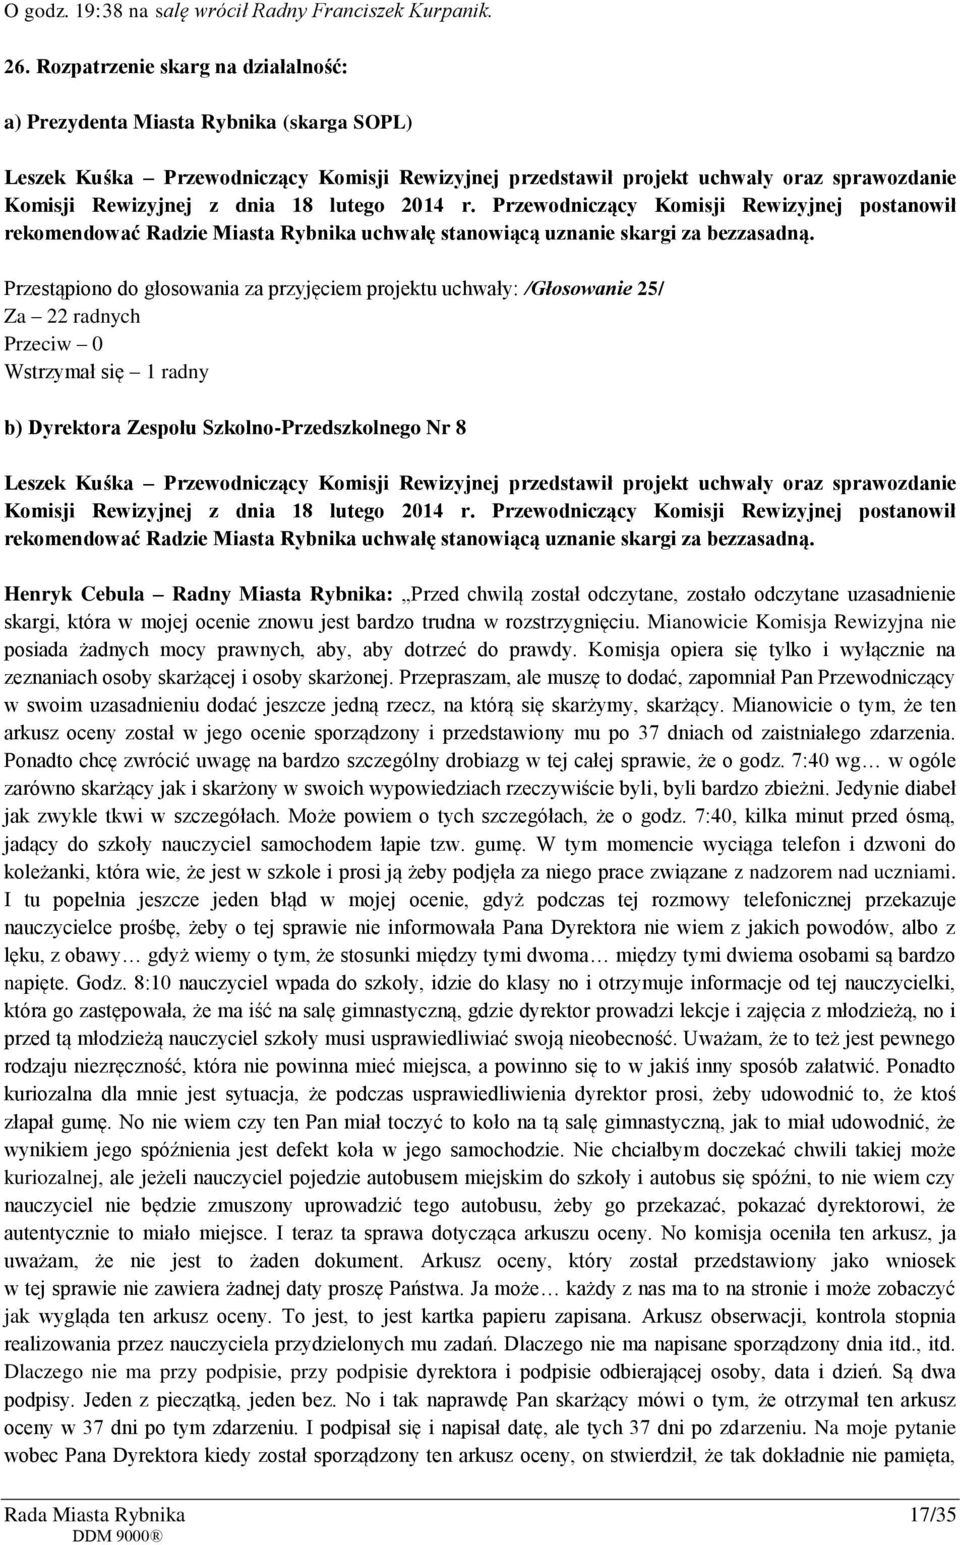 lutego 2014 r. Przewodniczący Komisji Rewizyjnej postanowił rekomendować Radzie Miasta Rybnika uchwałę stanowiącą uznanie skargi za bezzasadną.